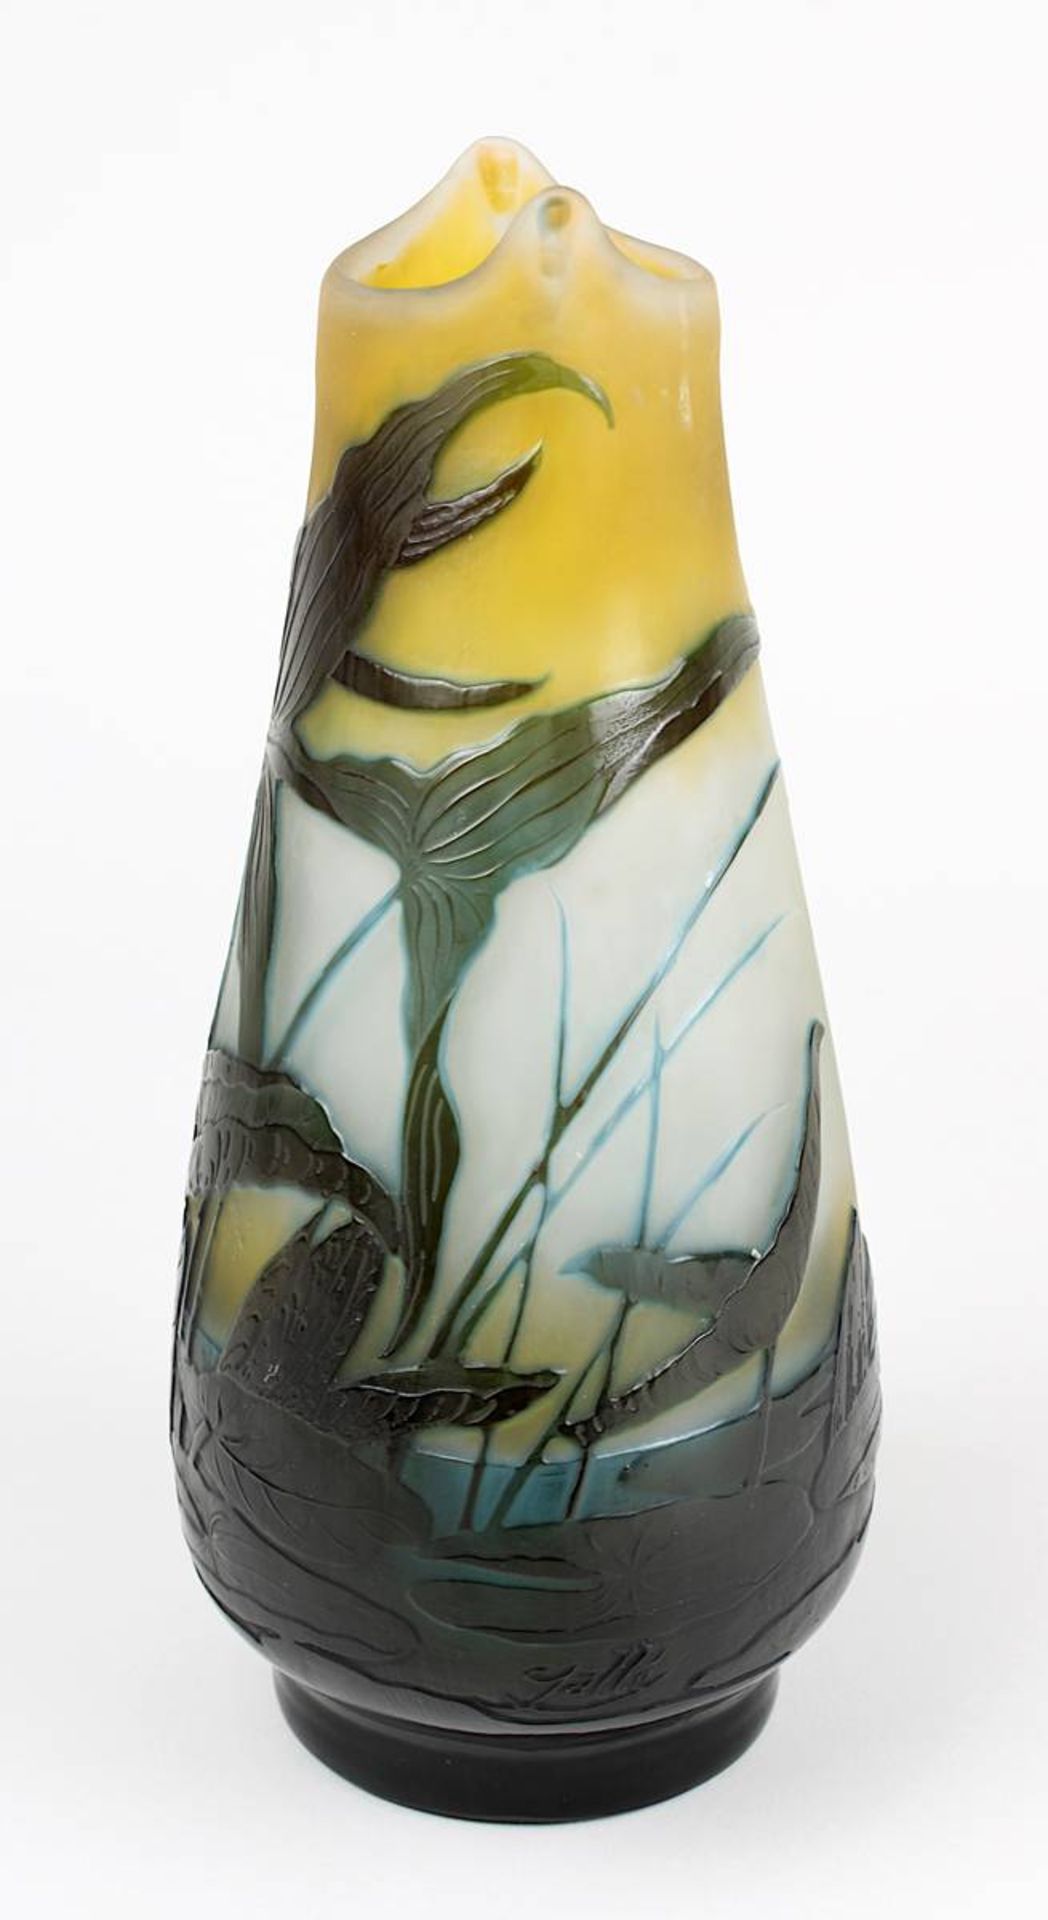 Gallé Jugendstilvase mit Seerosendekor, Nancy 1906 - 1914, seltene Gallé-Vase aus Klarglas, mit - Bild 2 aus 5